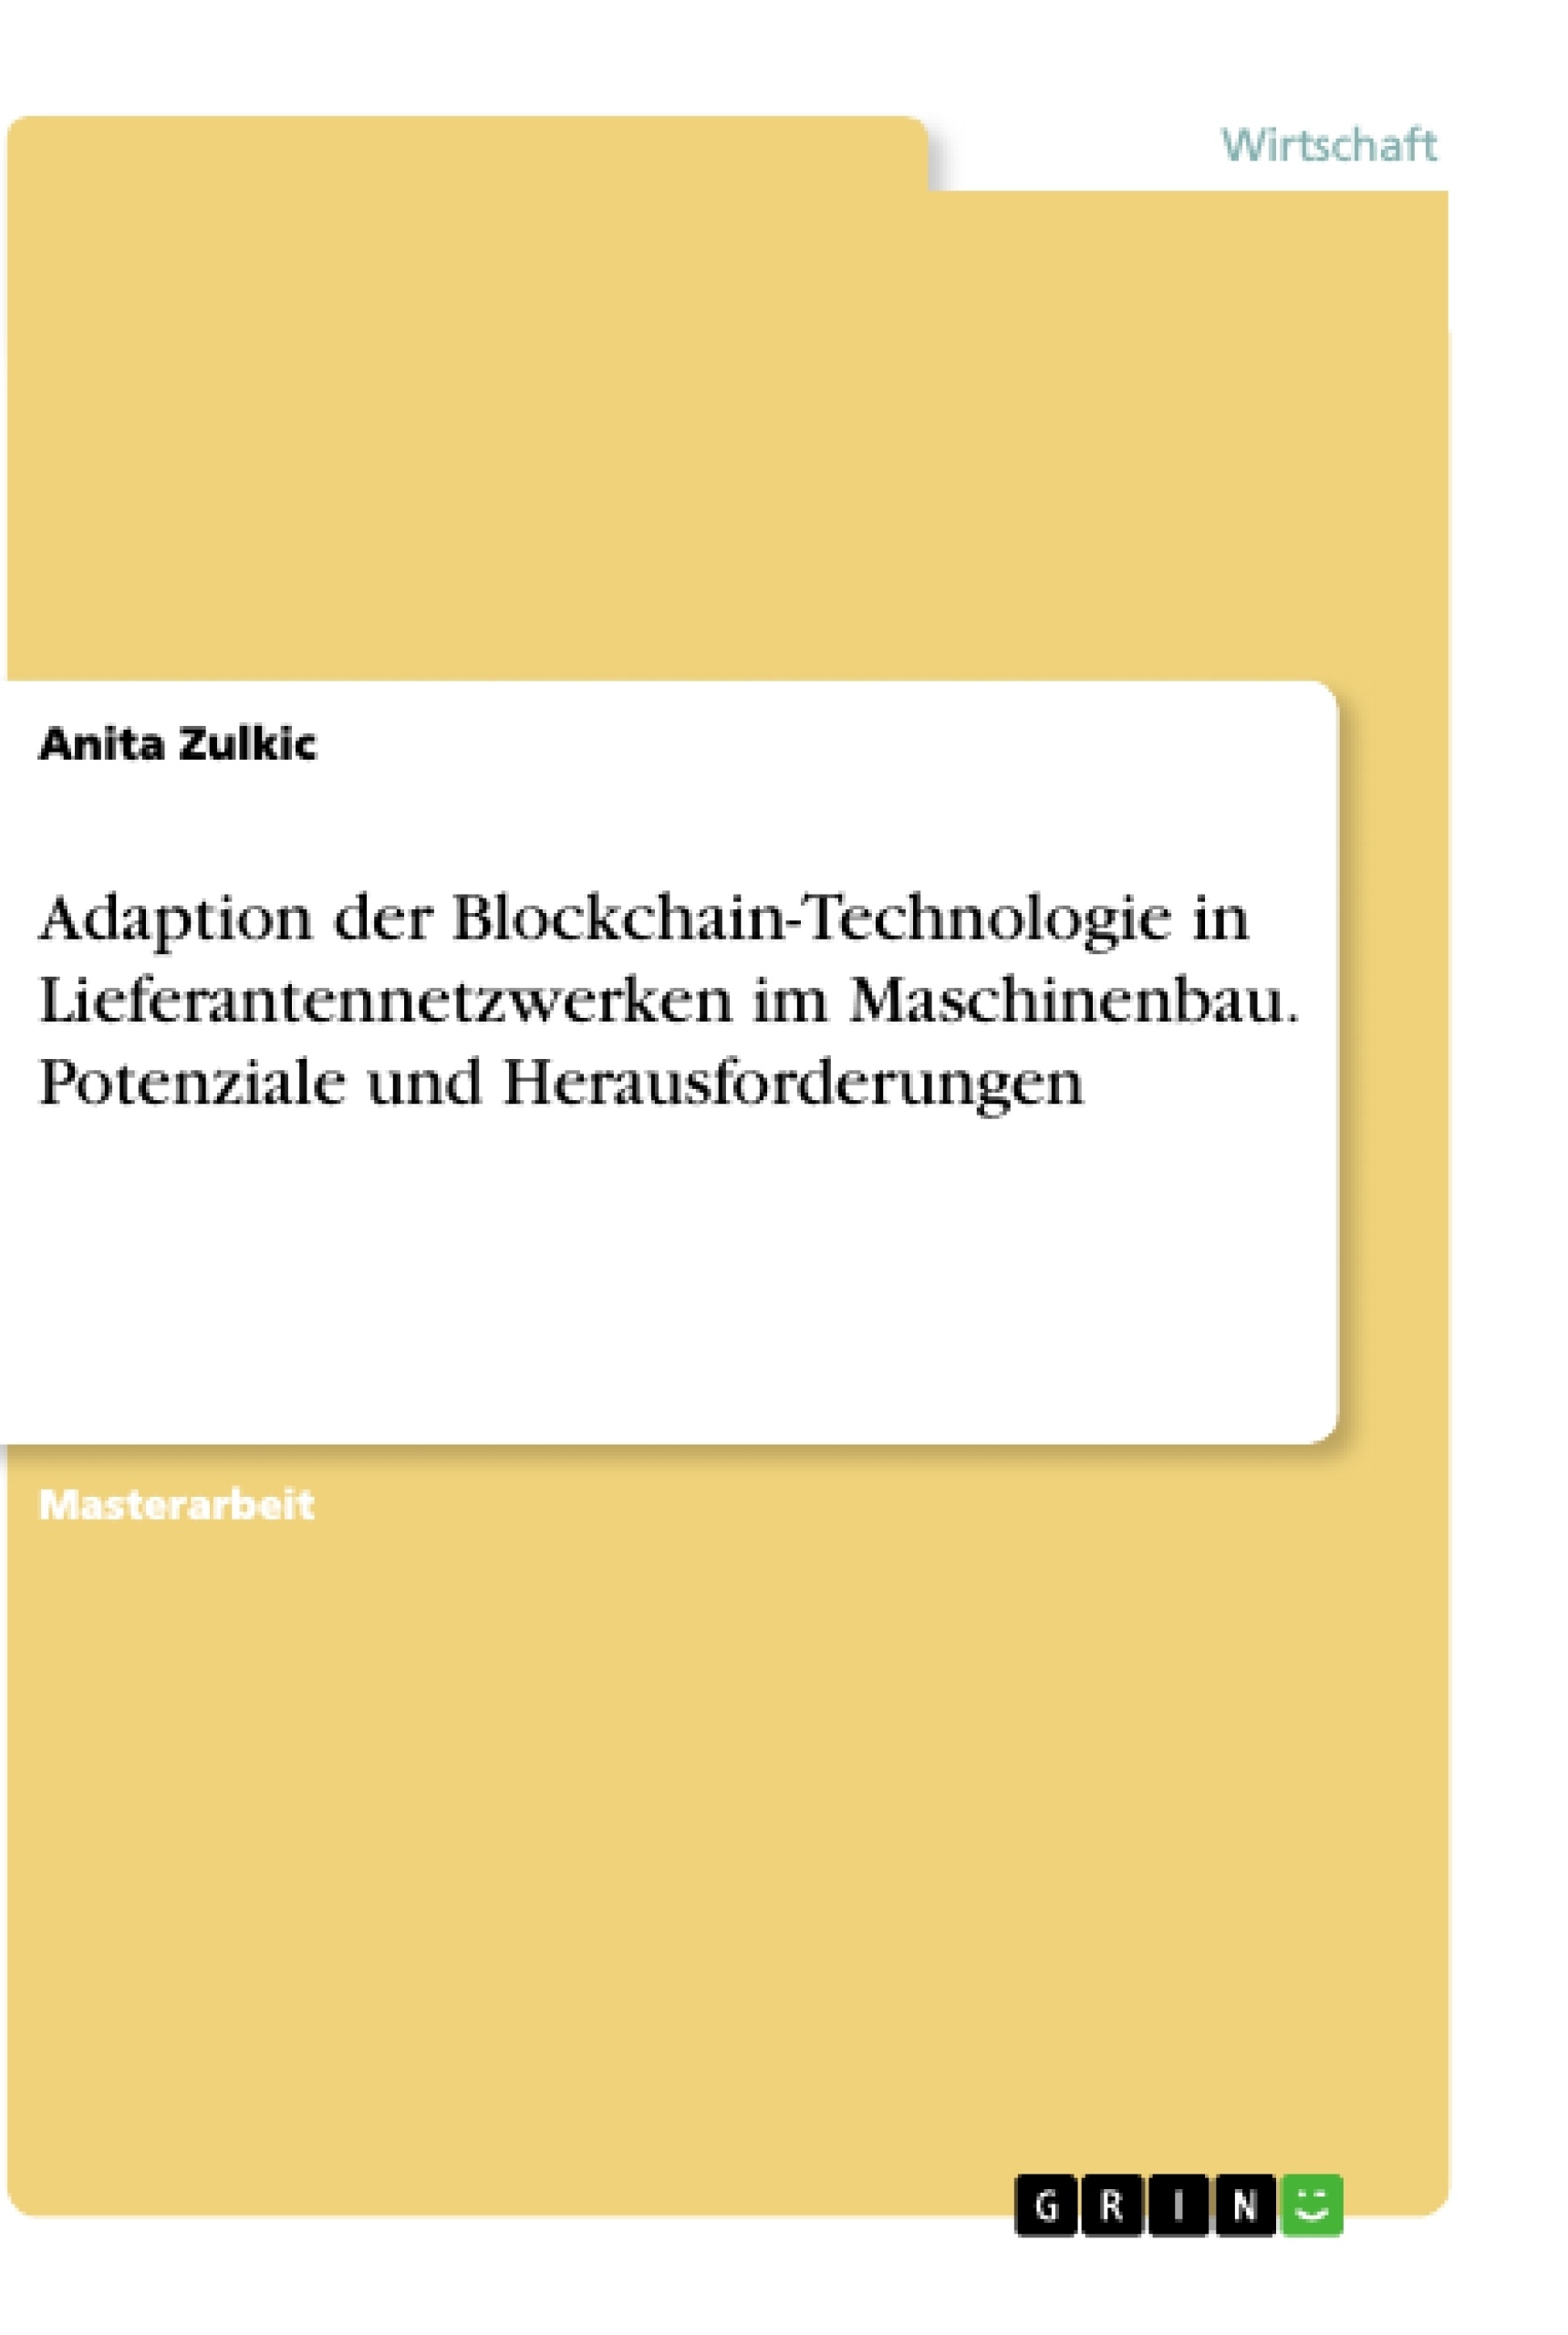 Título: Adaption der Blockchain-Technologie in Lieferantennetzwerken im Maschinenbau. Potenziale und Herausforderungen